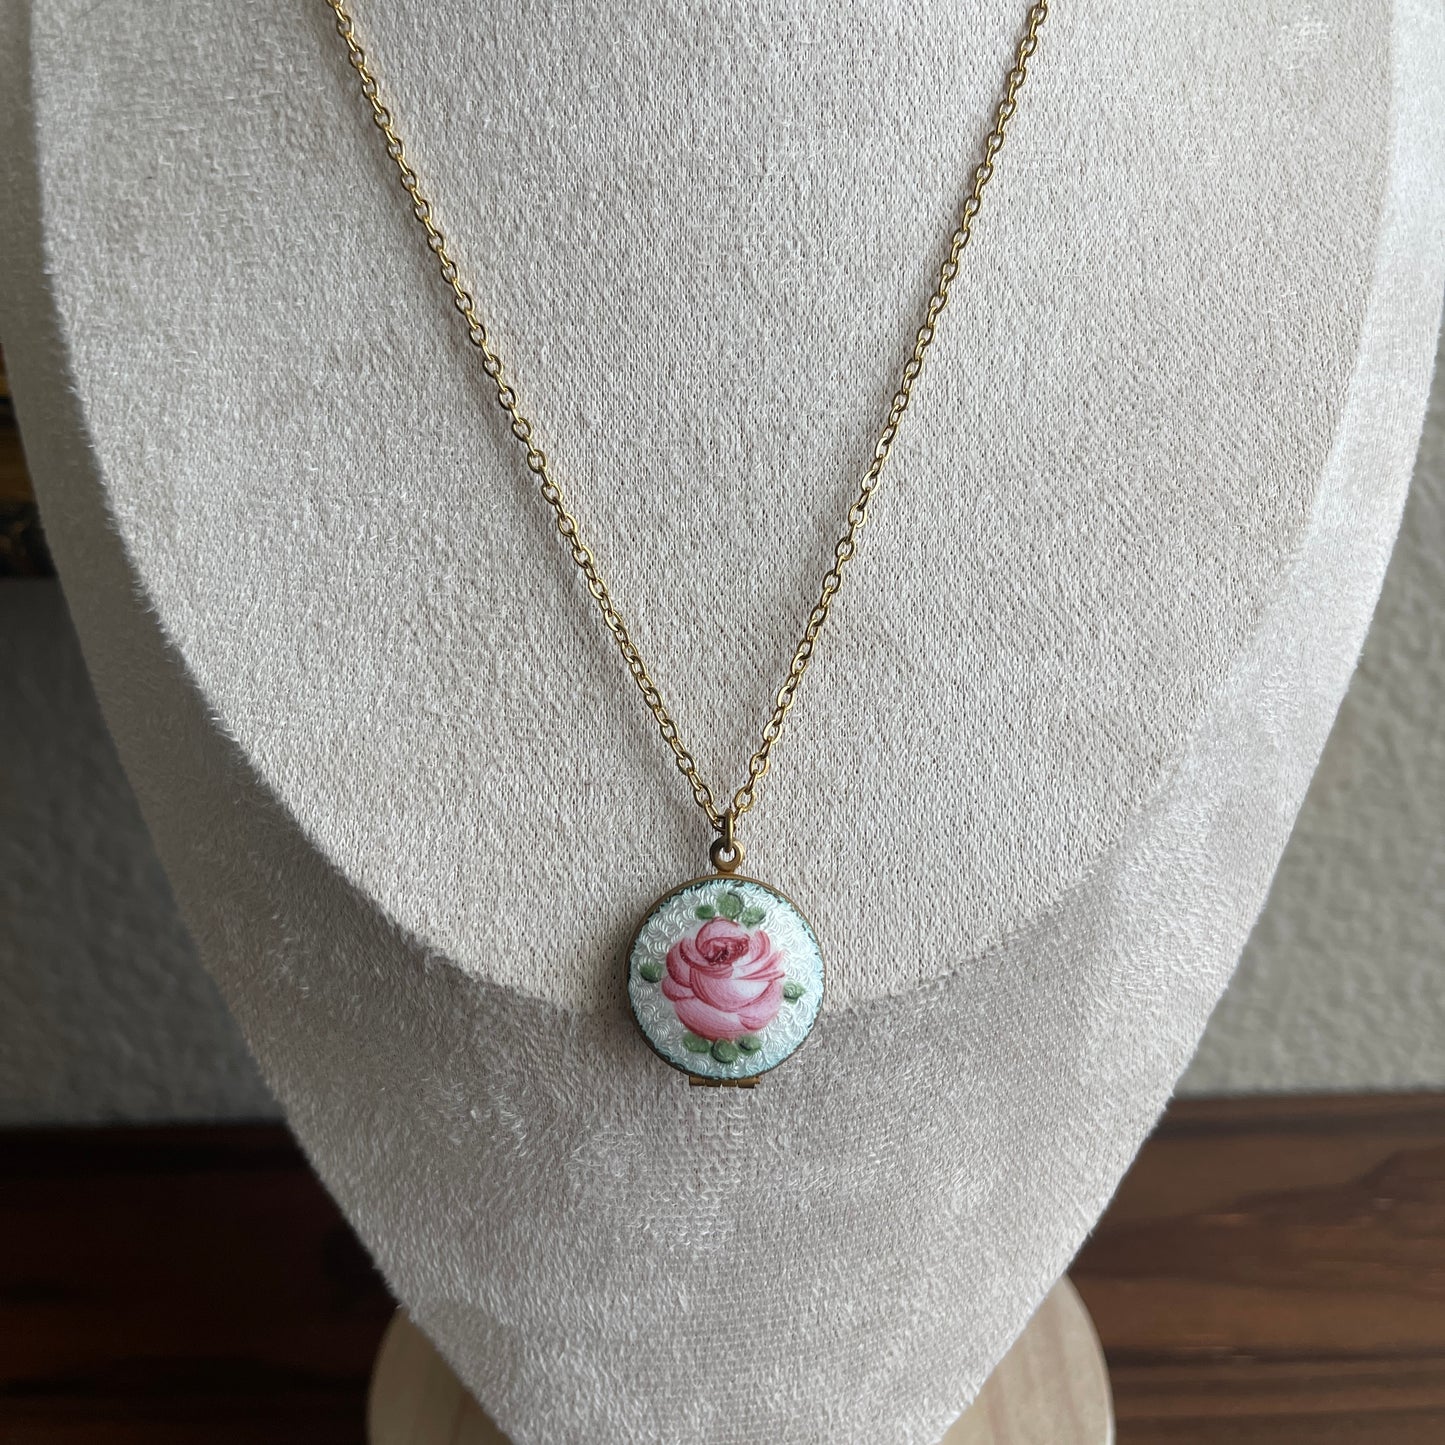 Vintage Guilloche Enamel Rose Pendant necklace